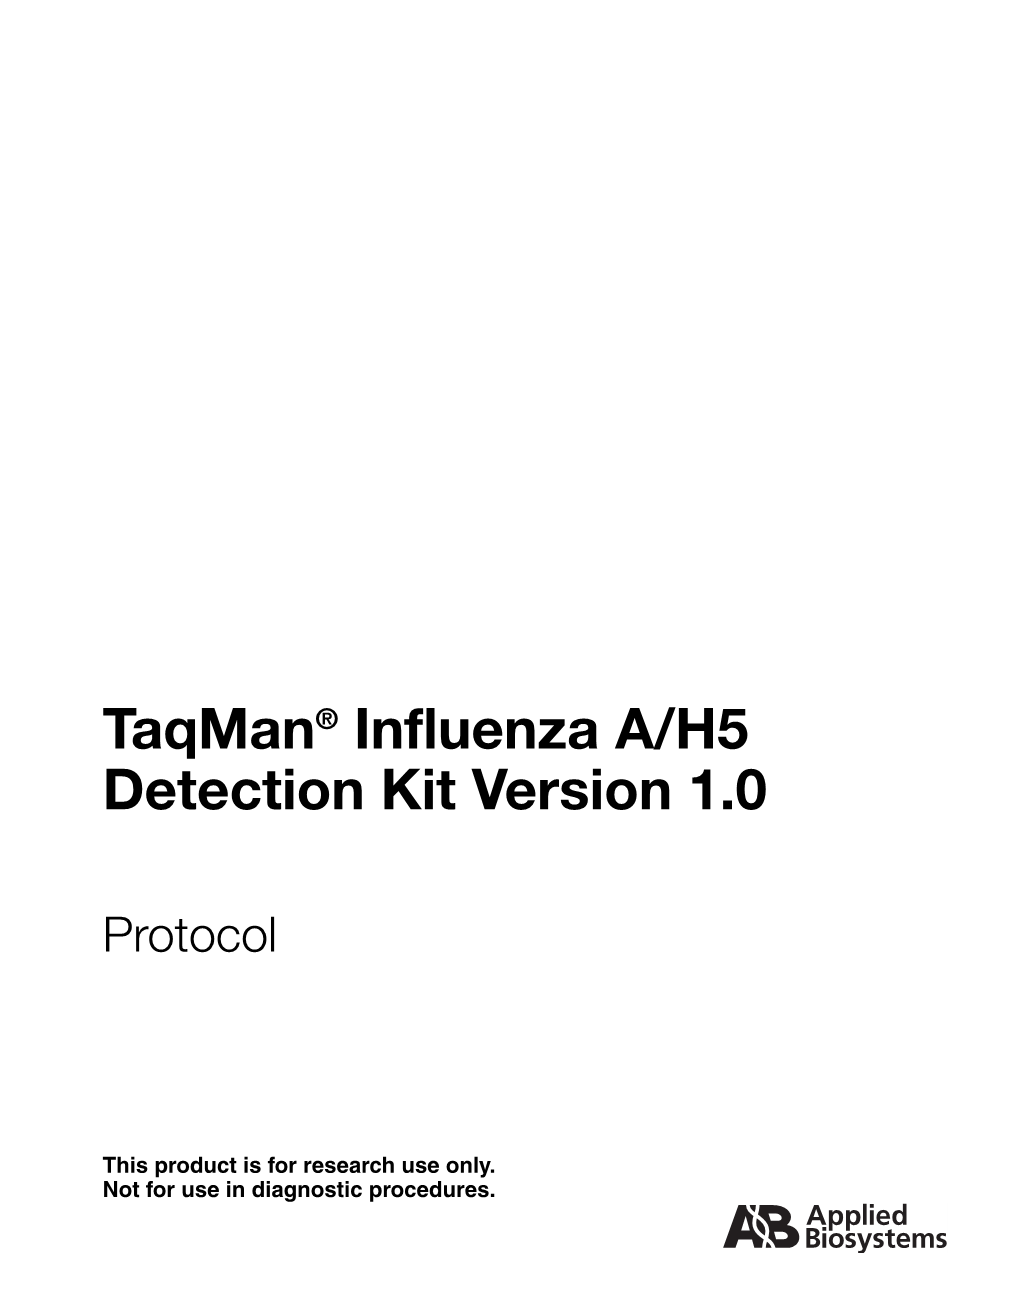 Taqman Influenza A/H5 Detection Kit Version 1.0 Protocol (PN 4370566C)